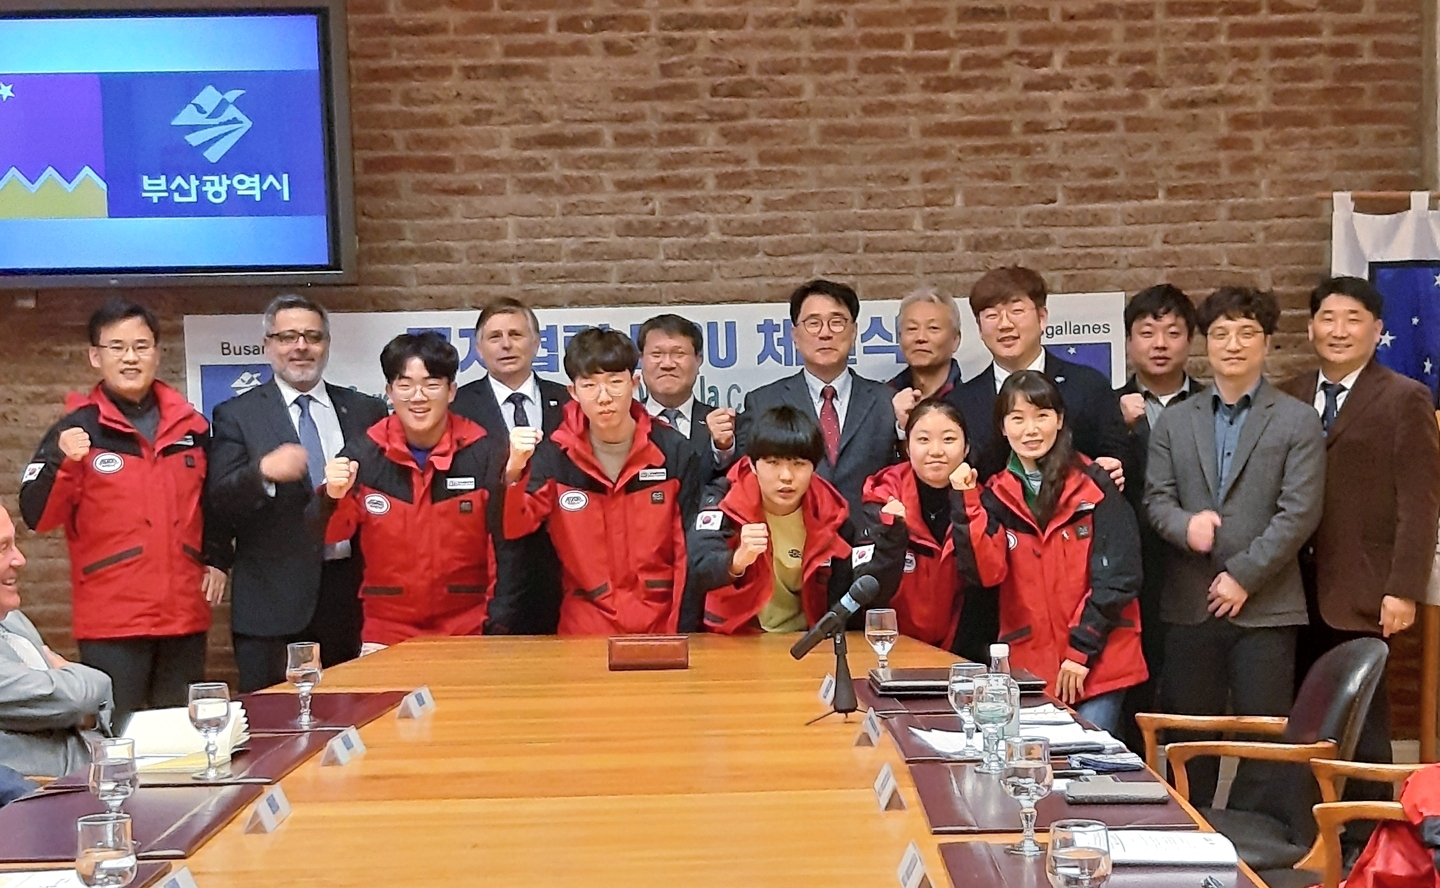 Intendente de Magallanes firmó importante acuerdo de cooperación y colaboración con el Distrito Metropolitano de Busán, ciudad de Corea del Sur